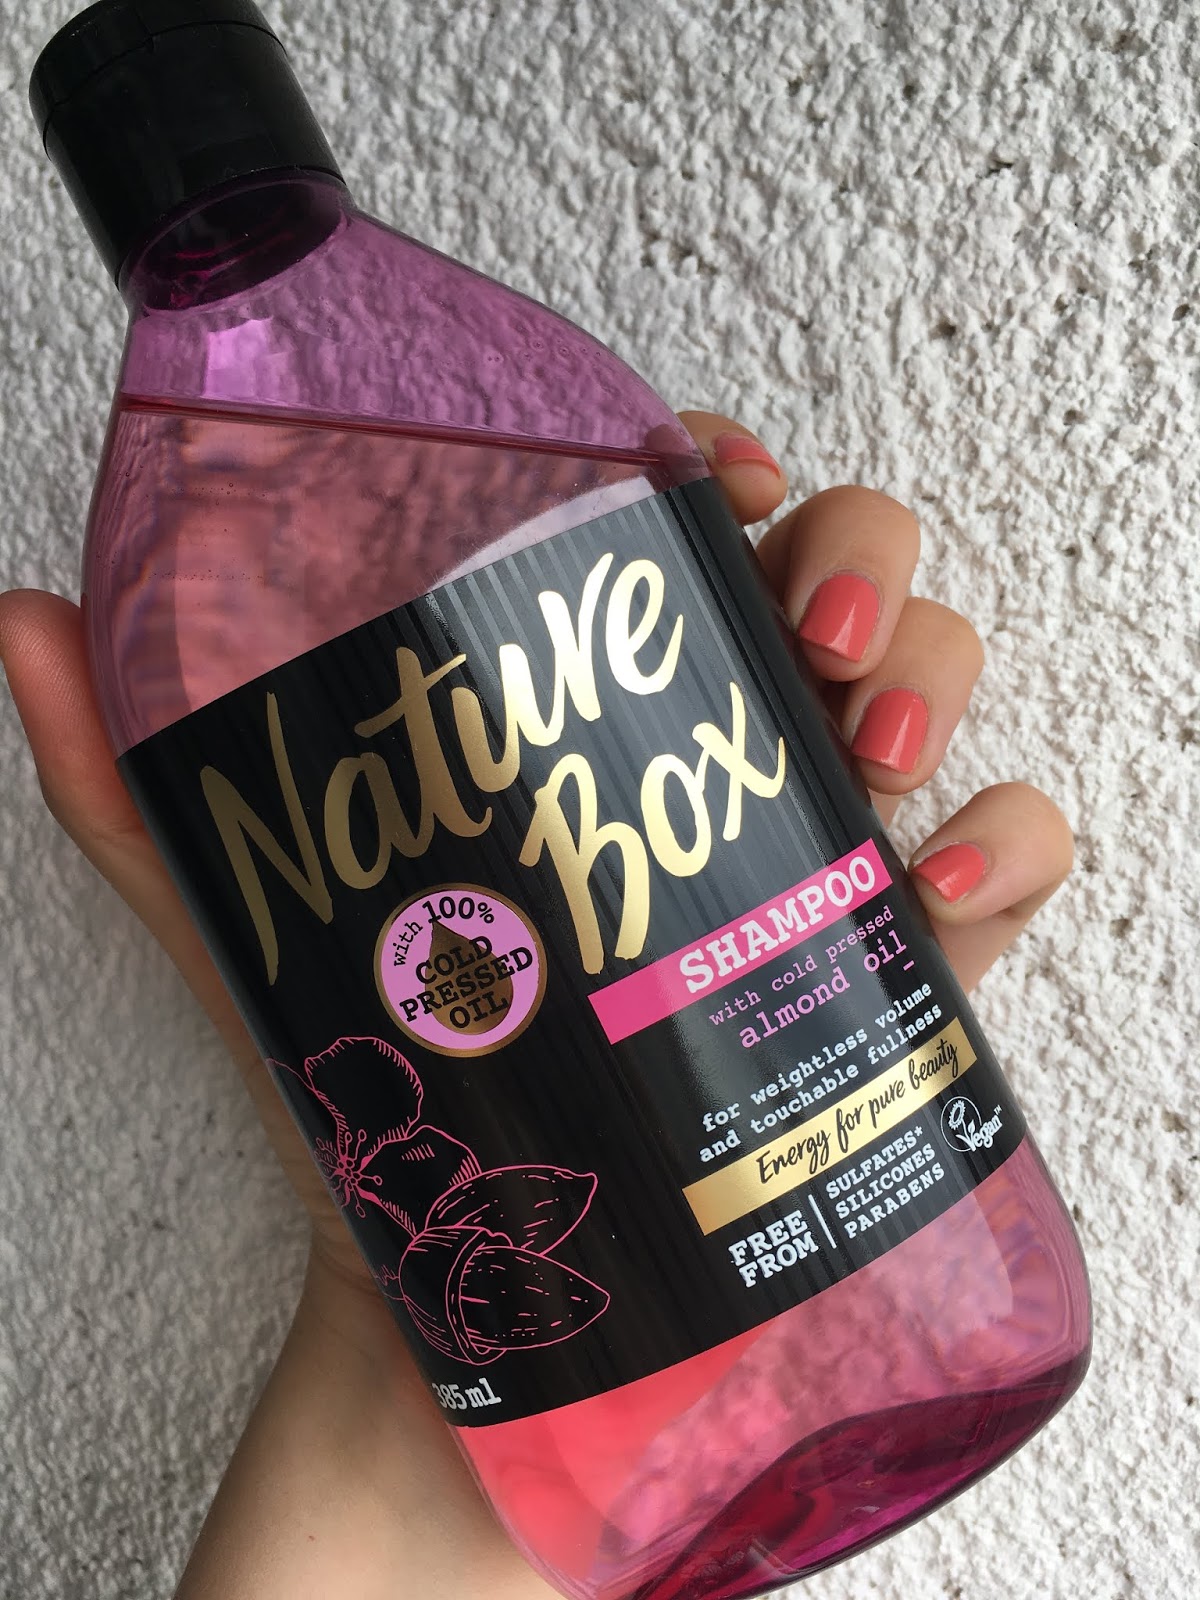 Pinkymono Novo U Svijetu Ljepote Nature Box Shampoo Almond Recenzija